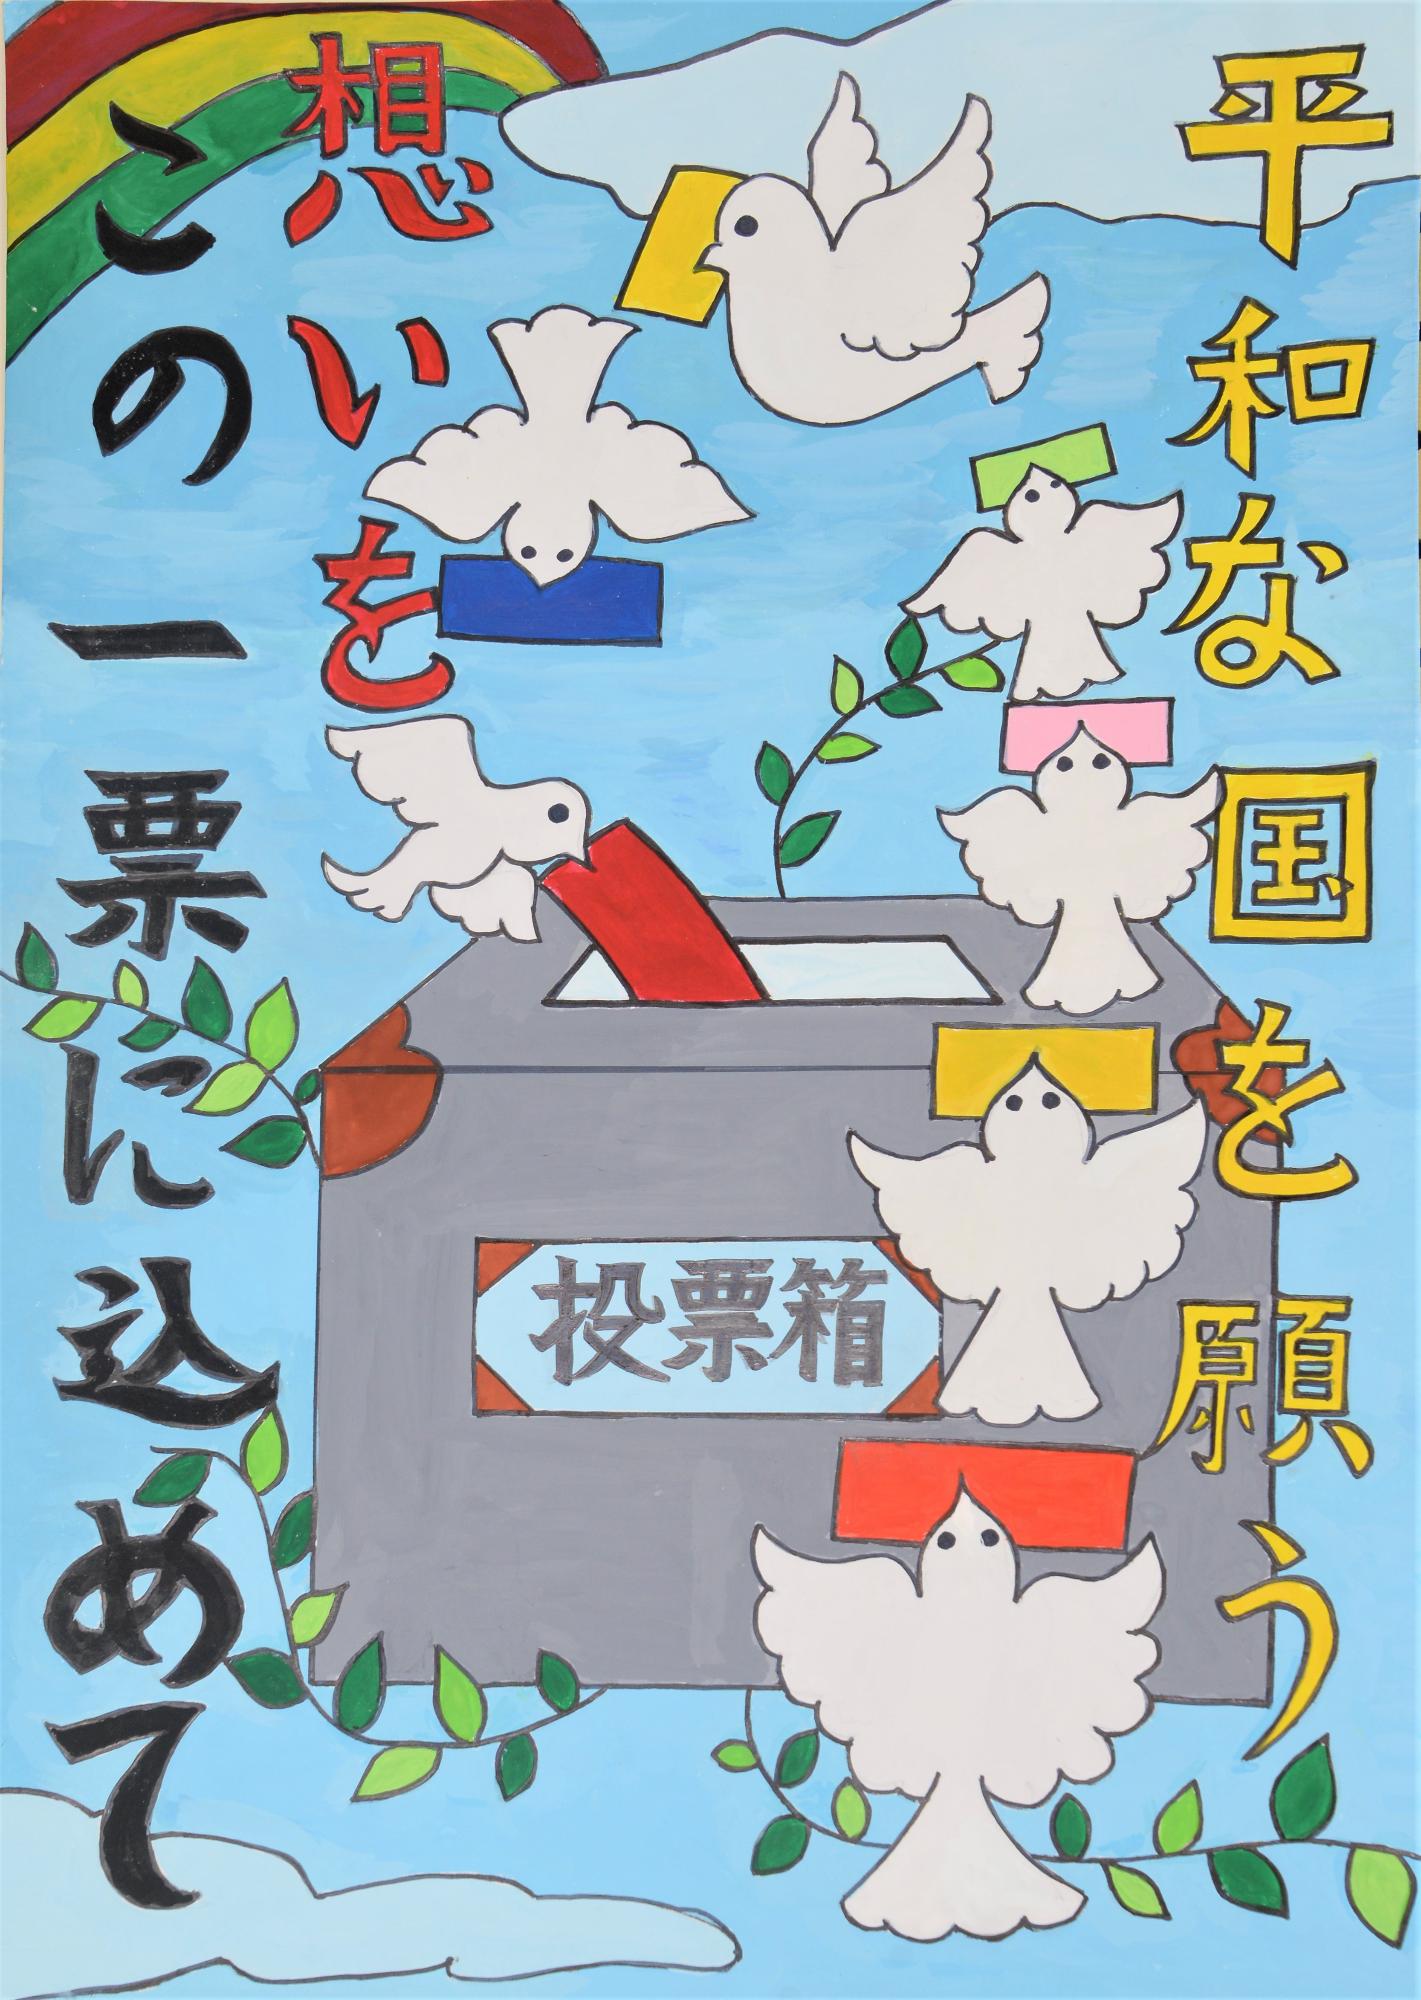 「平和な国を願う想いをこの一票に込めて」虹のかかった空を背景に多数の鳥が投票箱に投票をするポスター